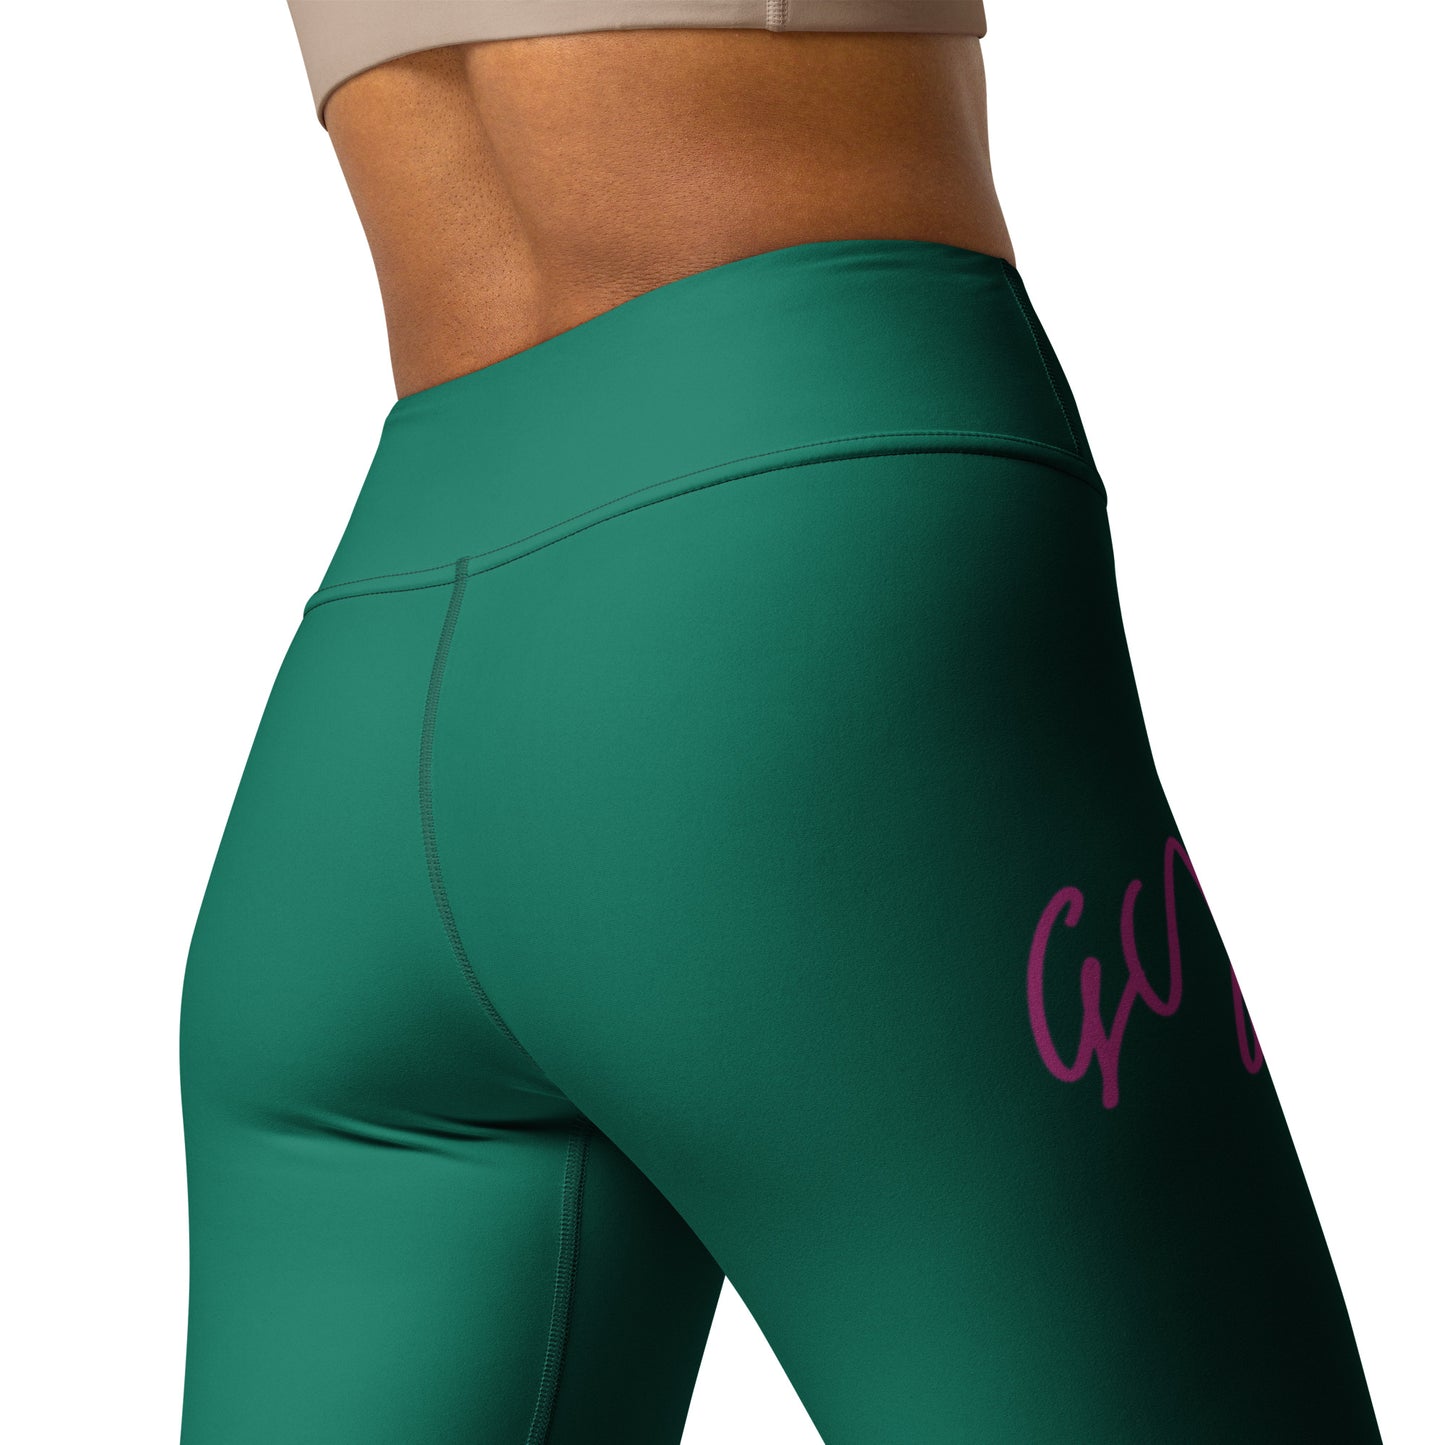 GymWidowz Yoga Leggings - Green